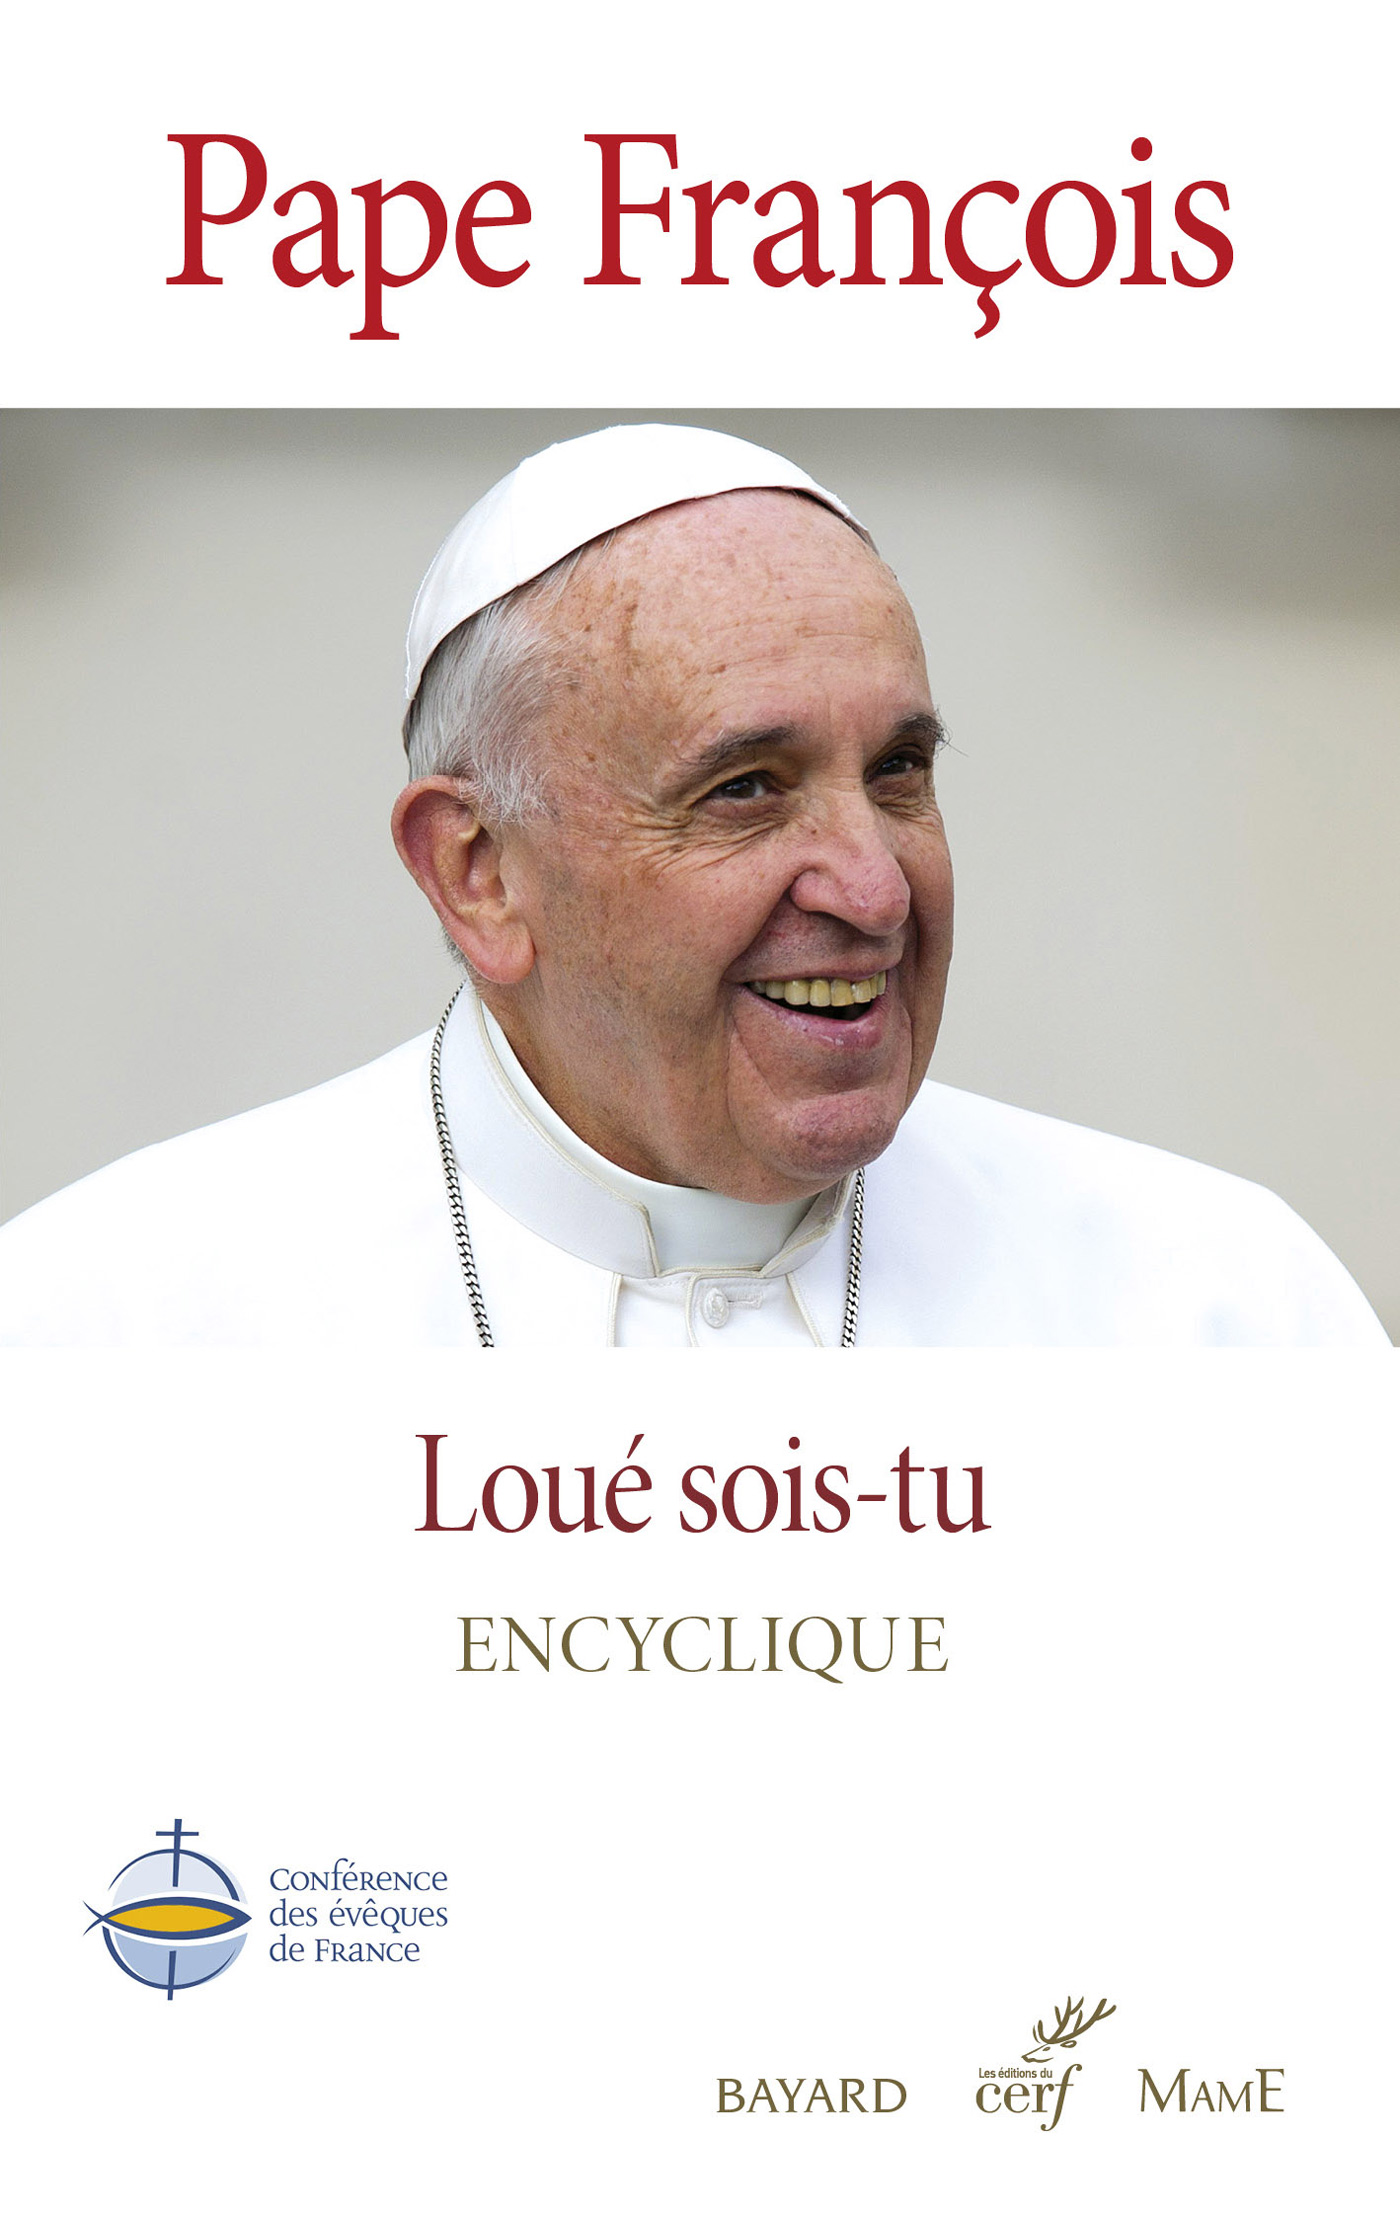 "Loué sois-tu", du pape François